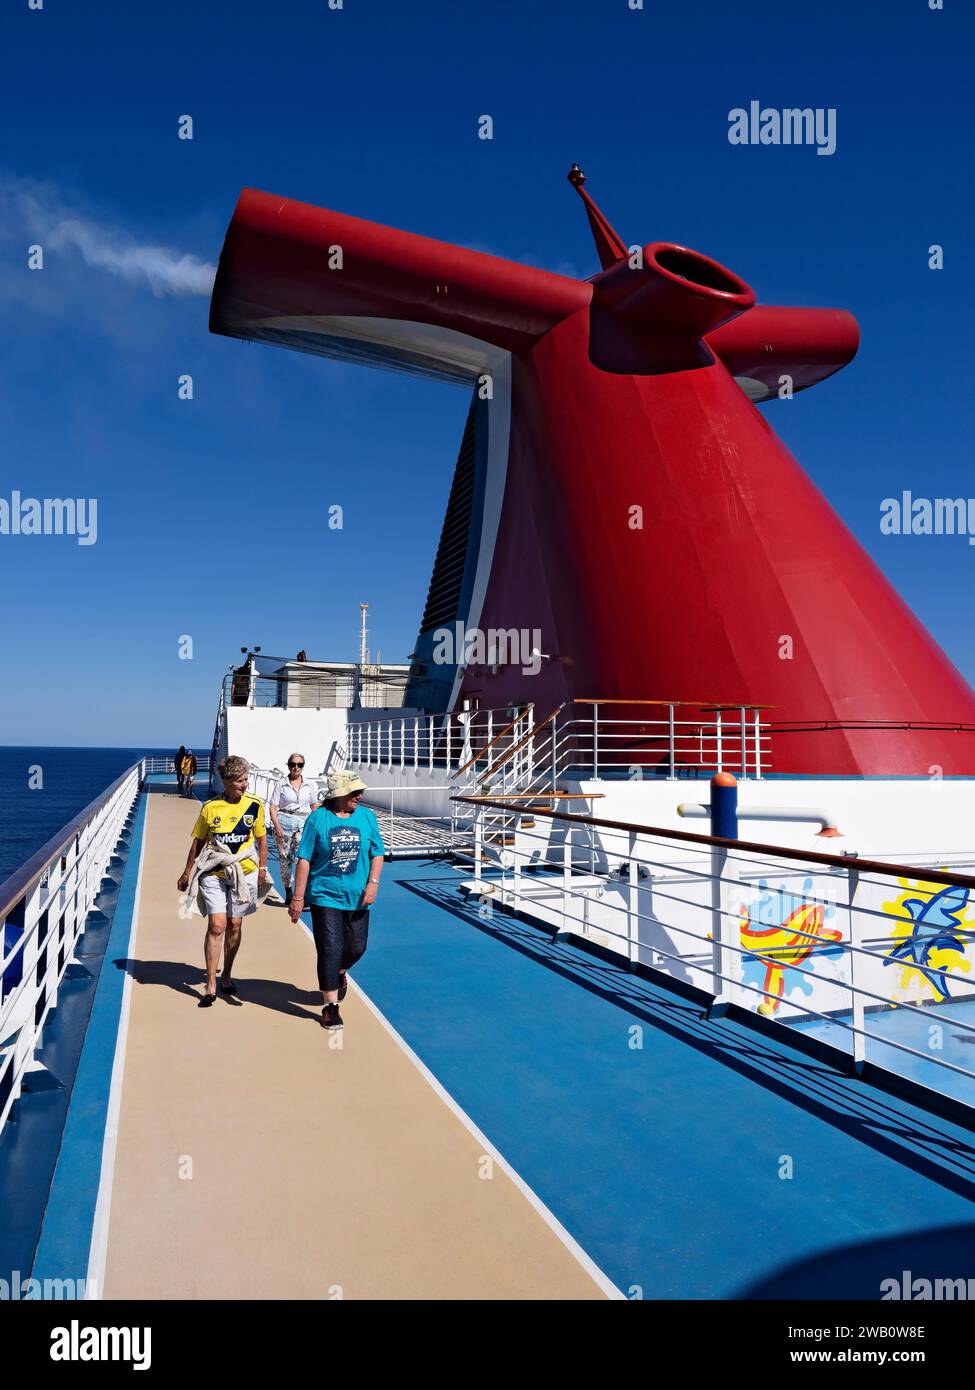 South Pacific Cruise / passagers de bateau de croisière marchant sur la piste de jogging du Carnival Splendor. Après avoir quitté Sydney Australie ce crui Banque D'Images